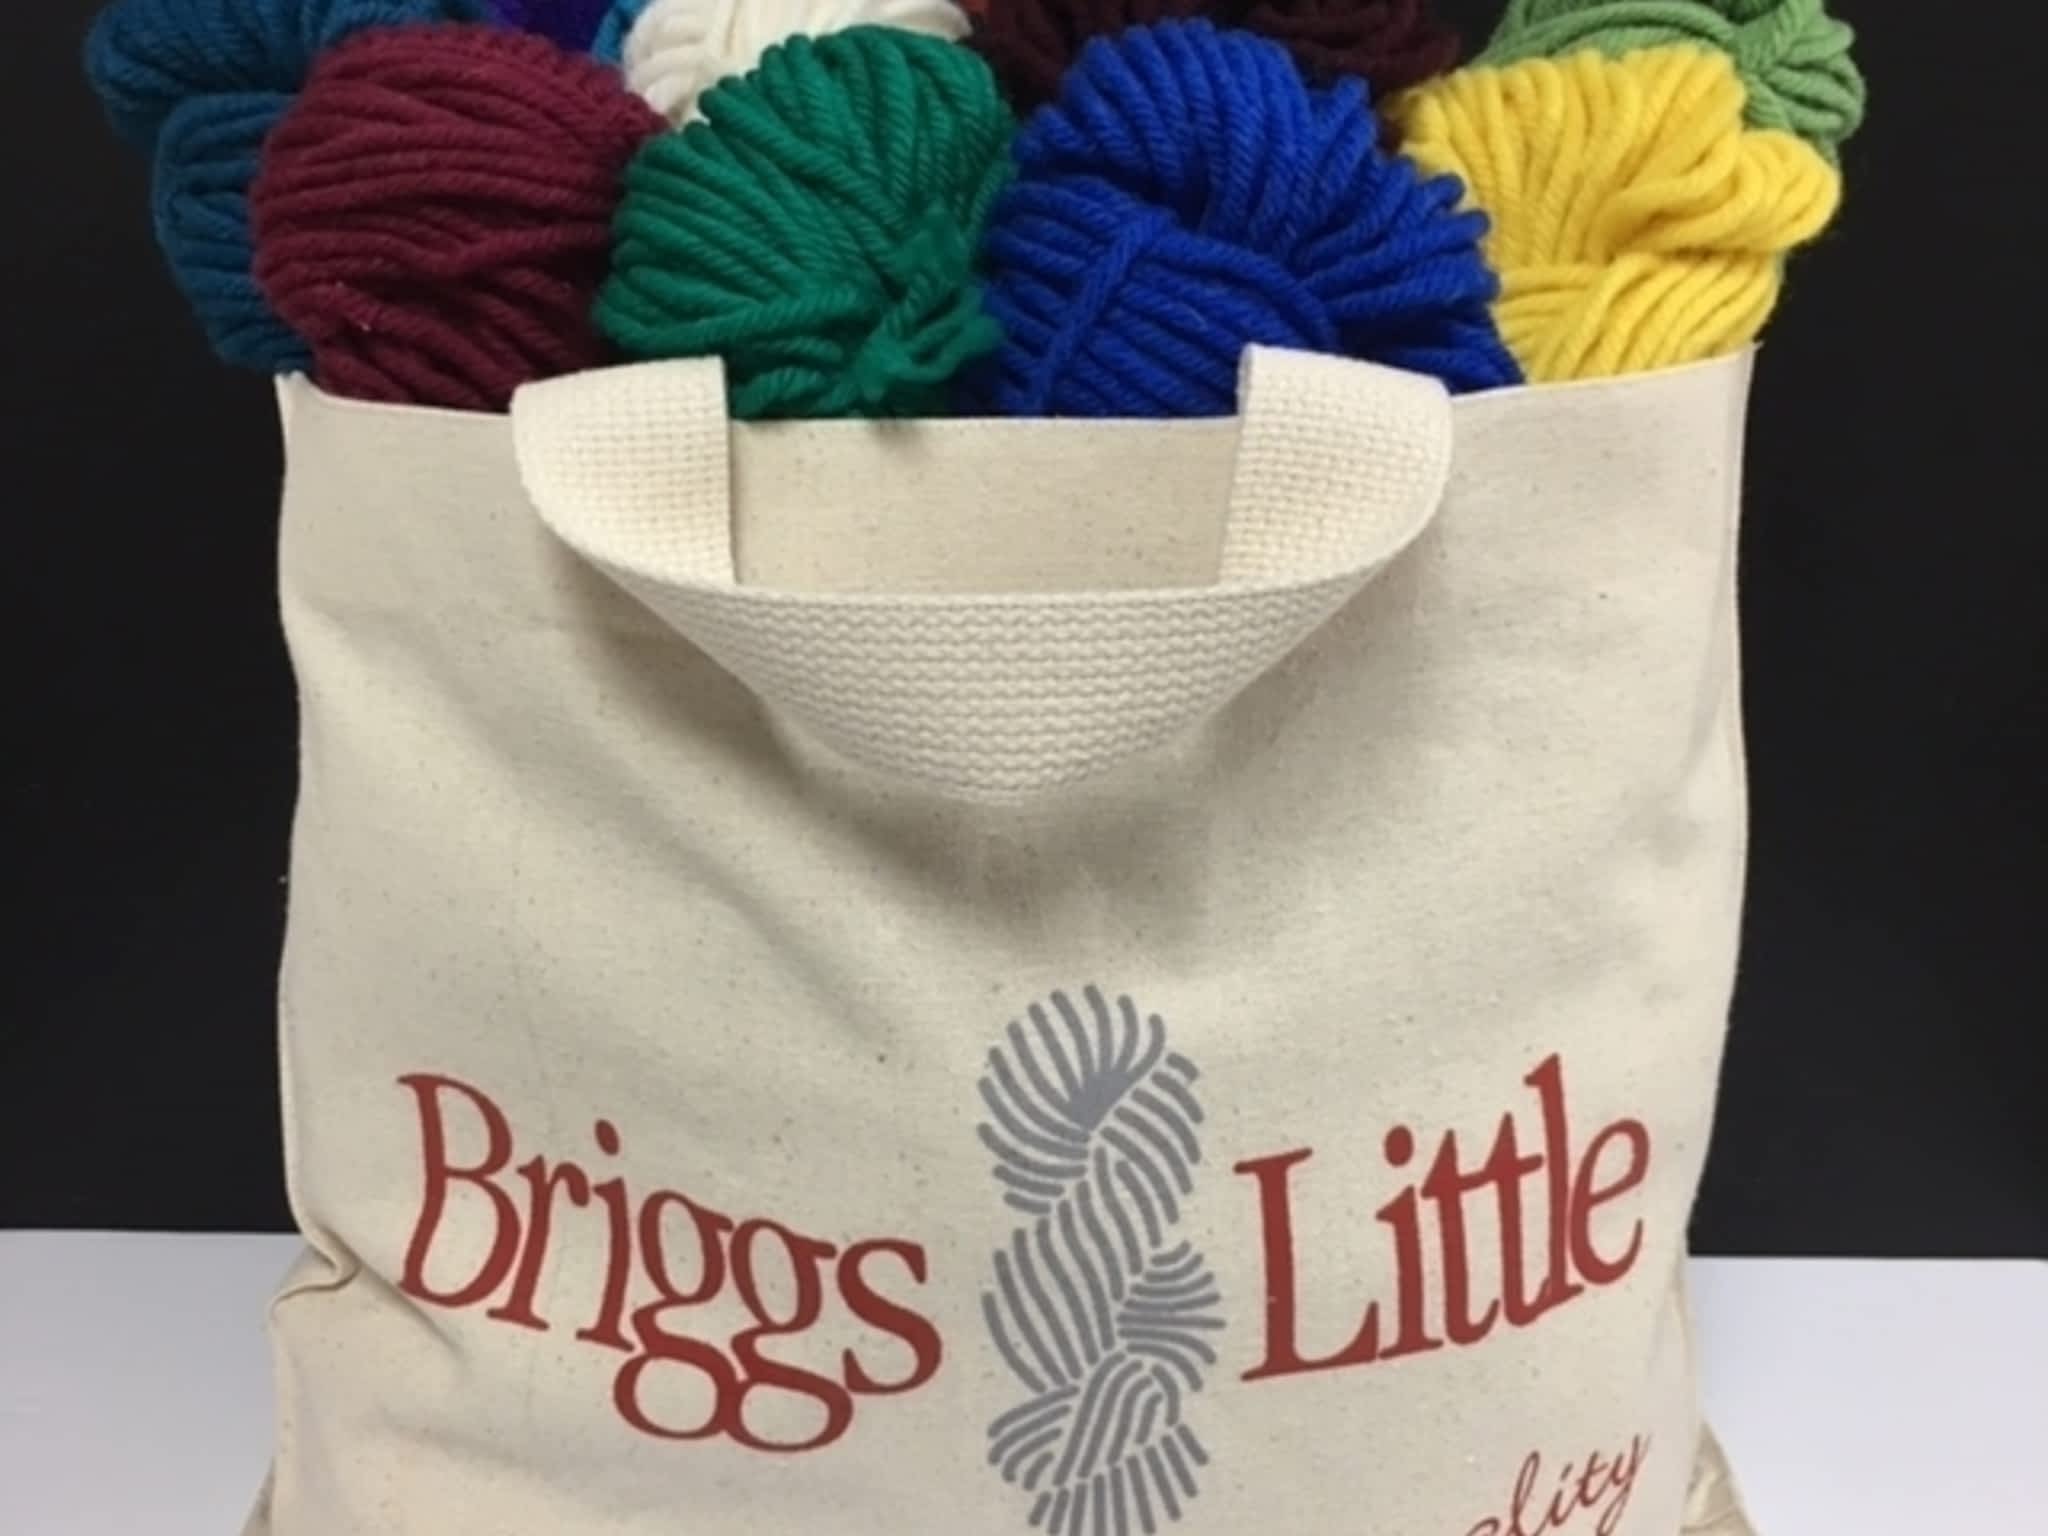 photo Briggs & Little Woolen Mills Ltd